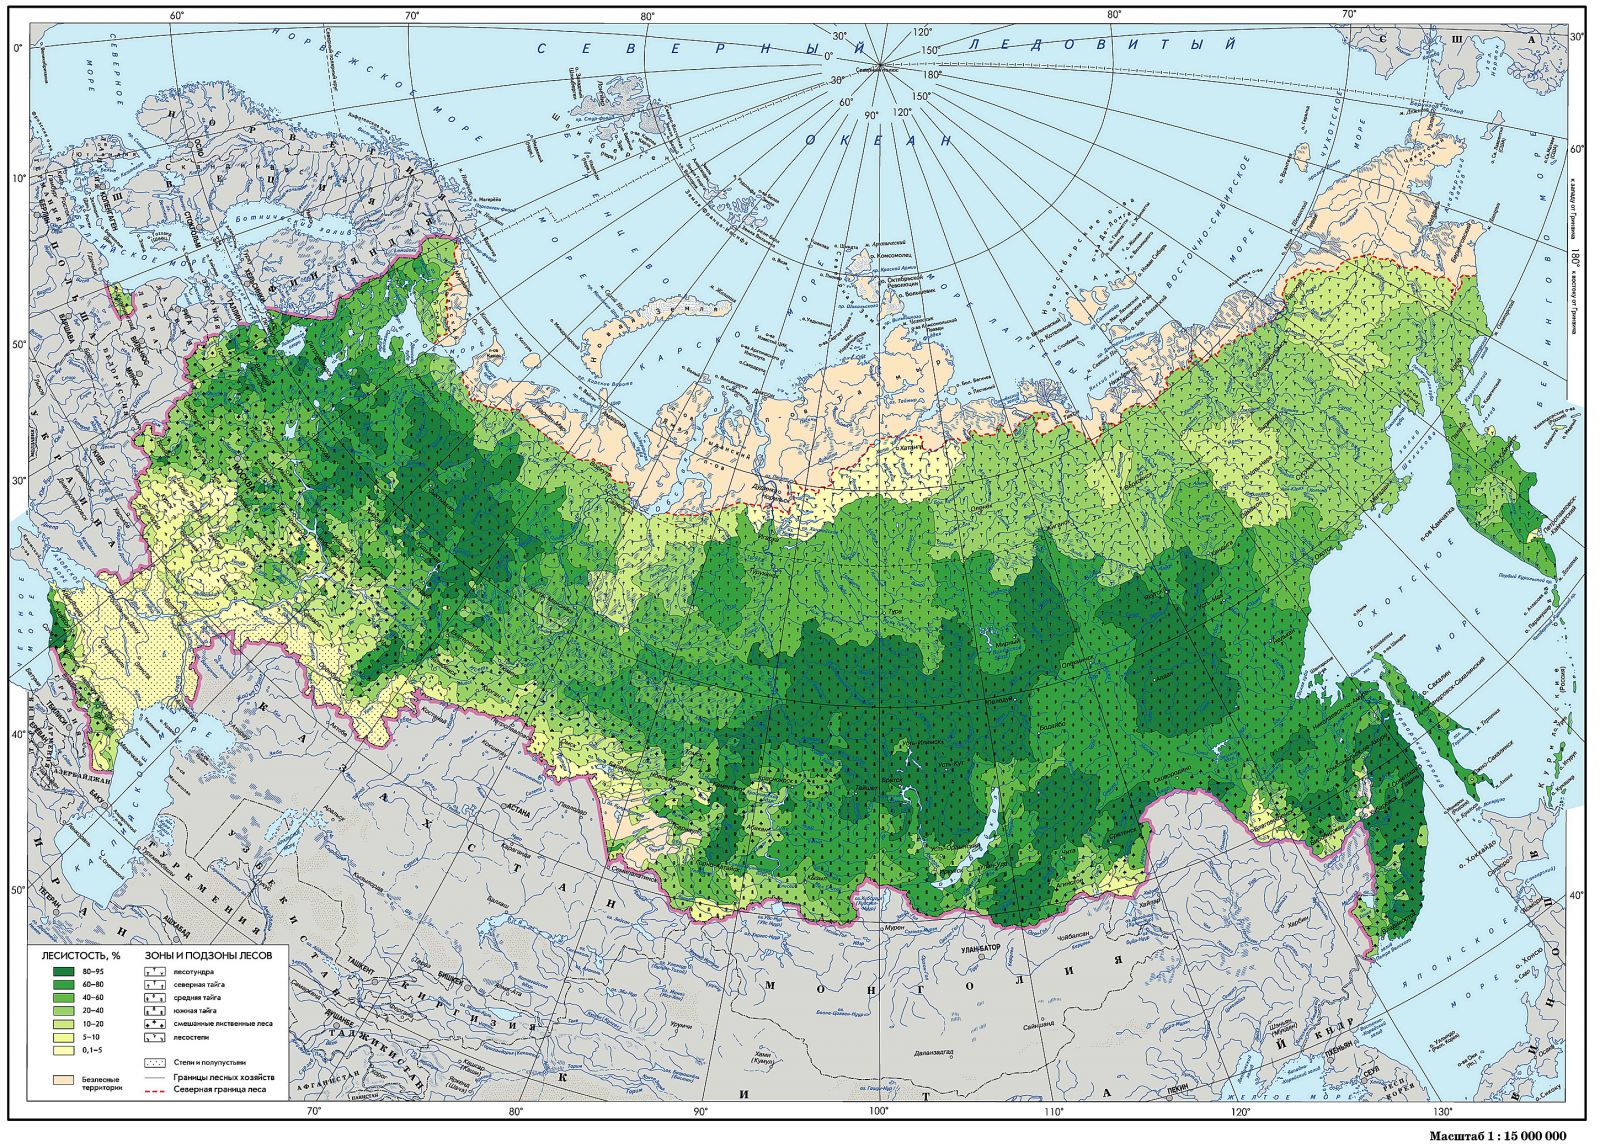 Реферат На Тему Лесные Ресурсы России